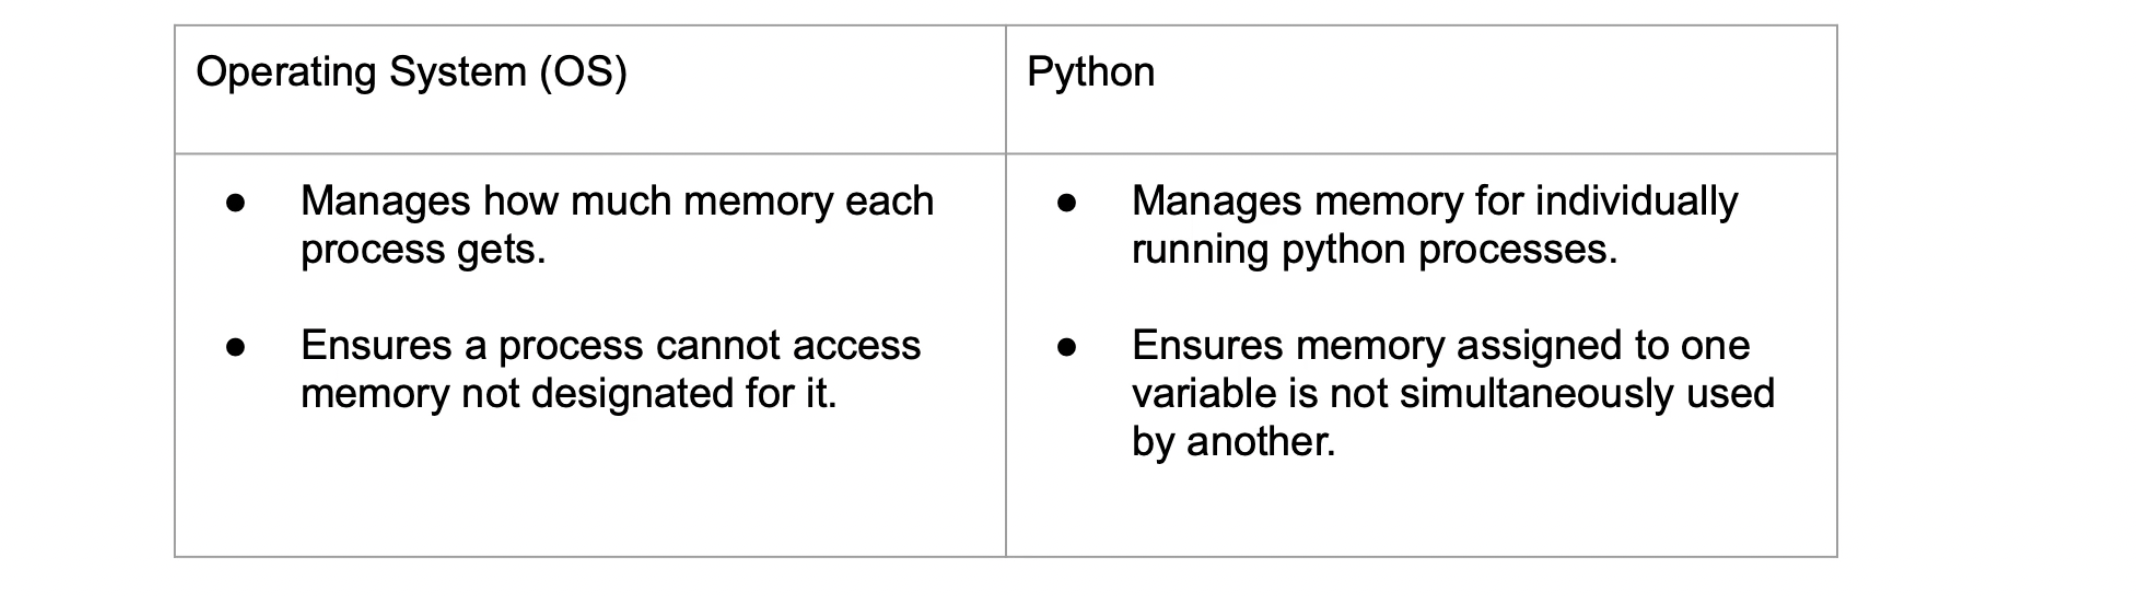 Python 1 